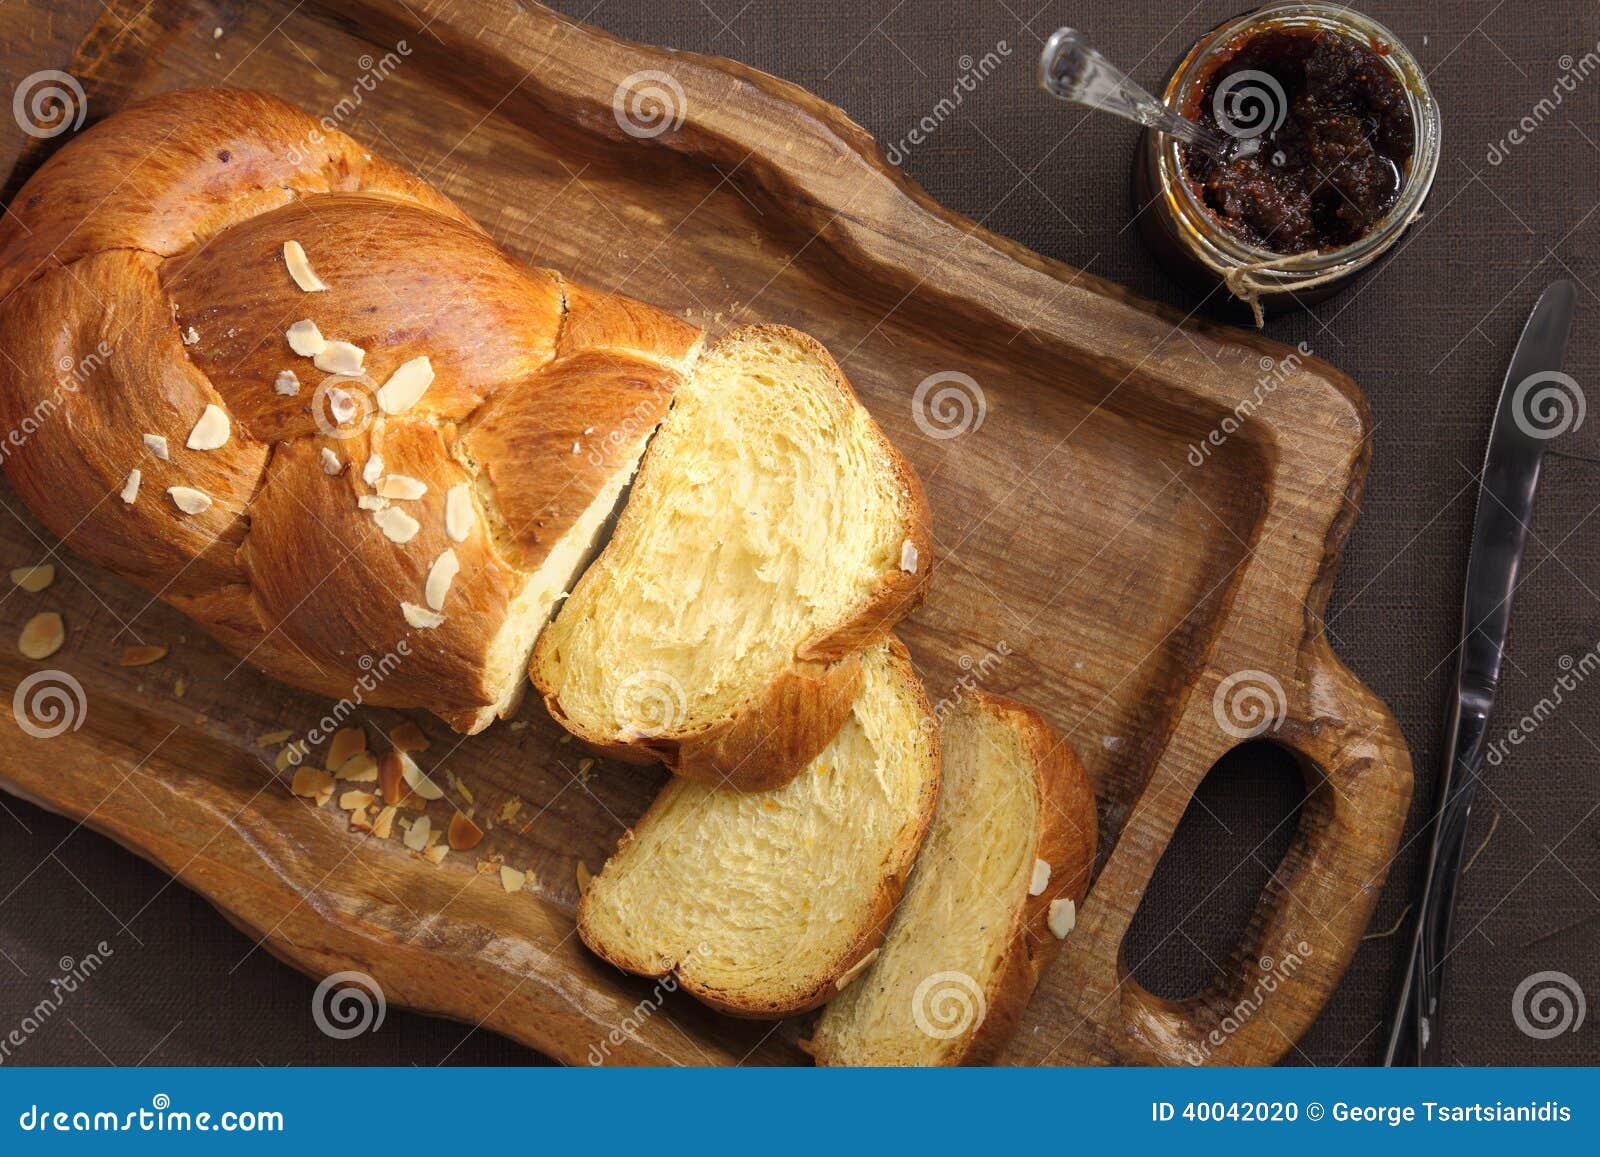 sweet brioche bread